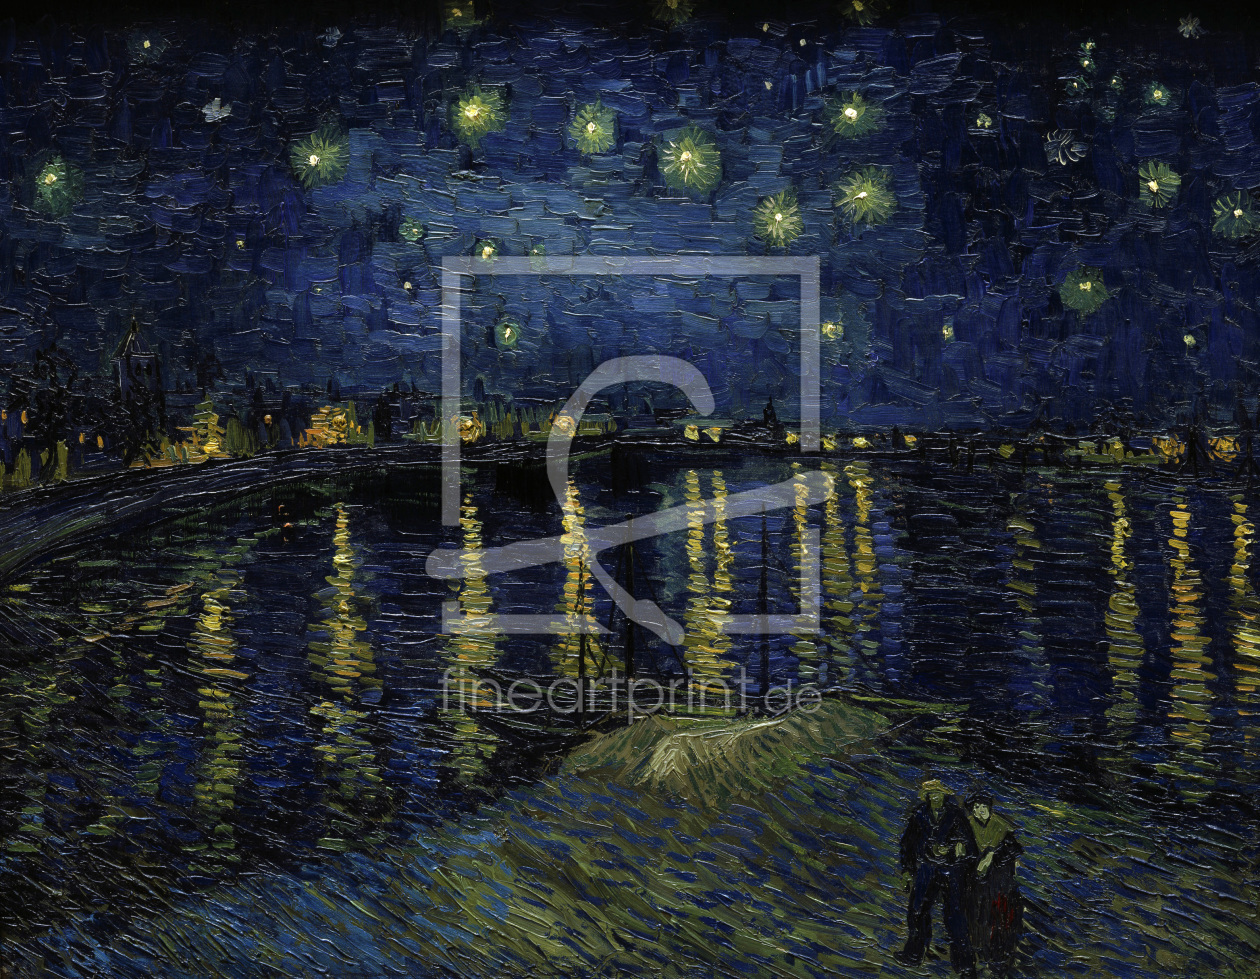 Bild-Nr.: 30003330 van Gogh / Starry night over the Rhône erstellt von van Gogh, Vincent